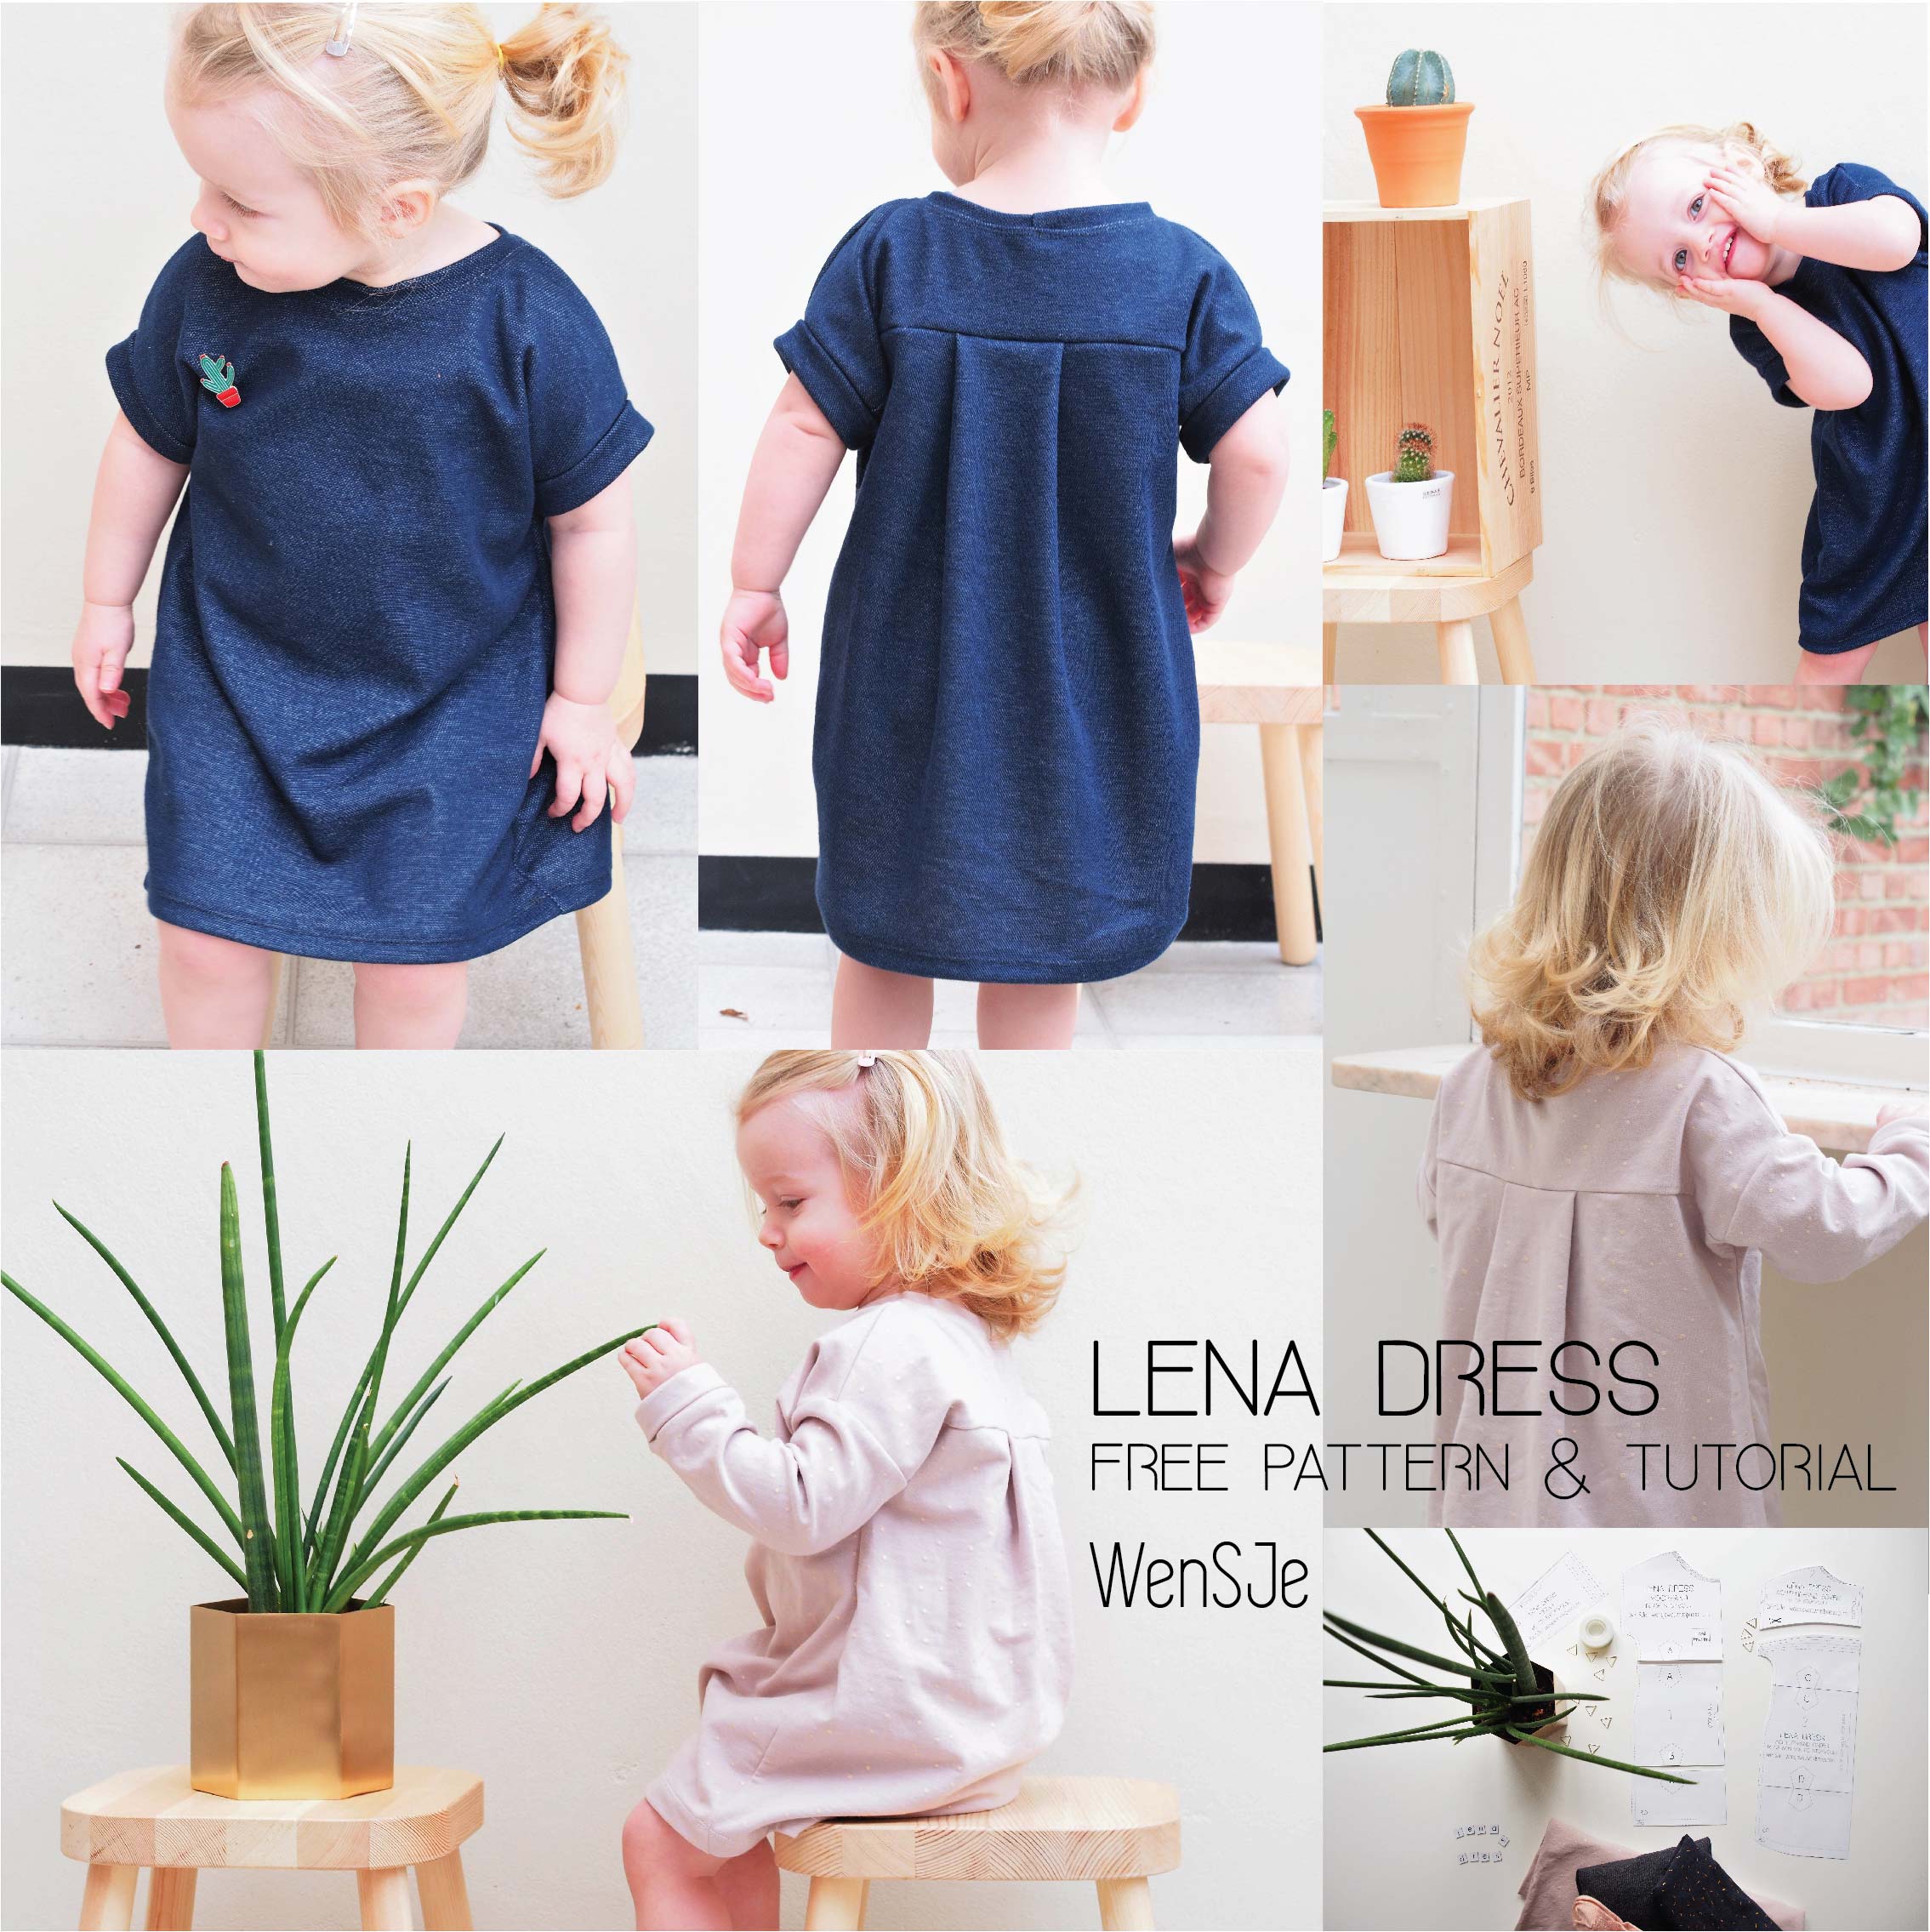 Lena dress naaipatroon – free pattern & tutorial - WISJ Designs